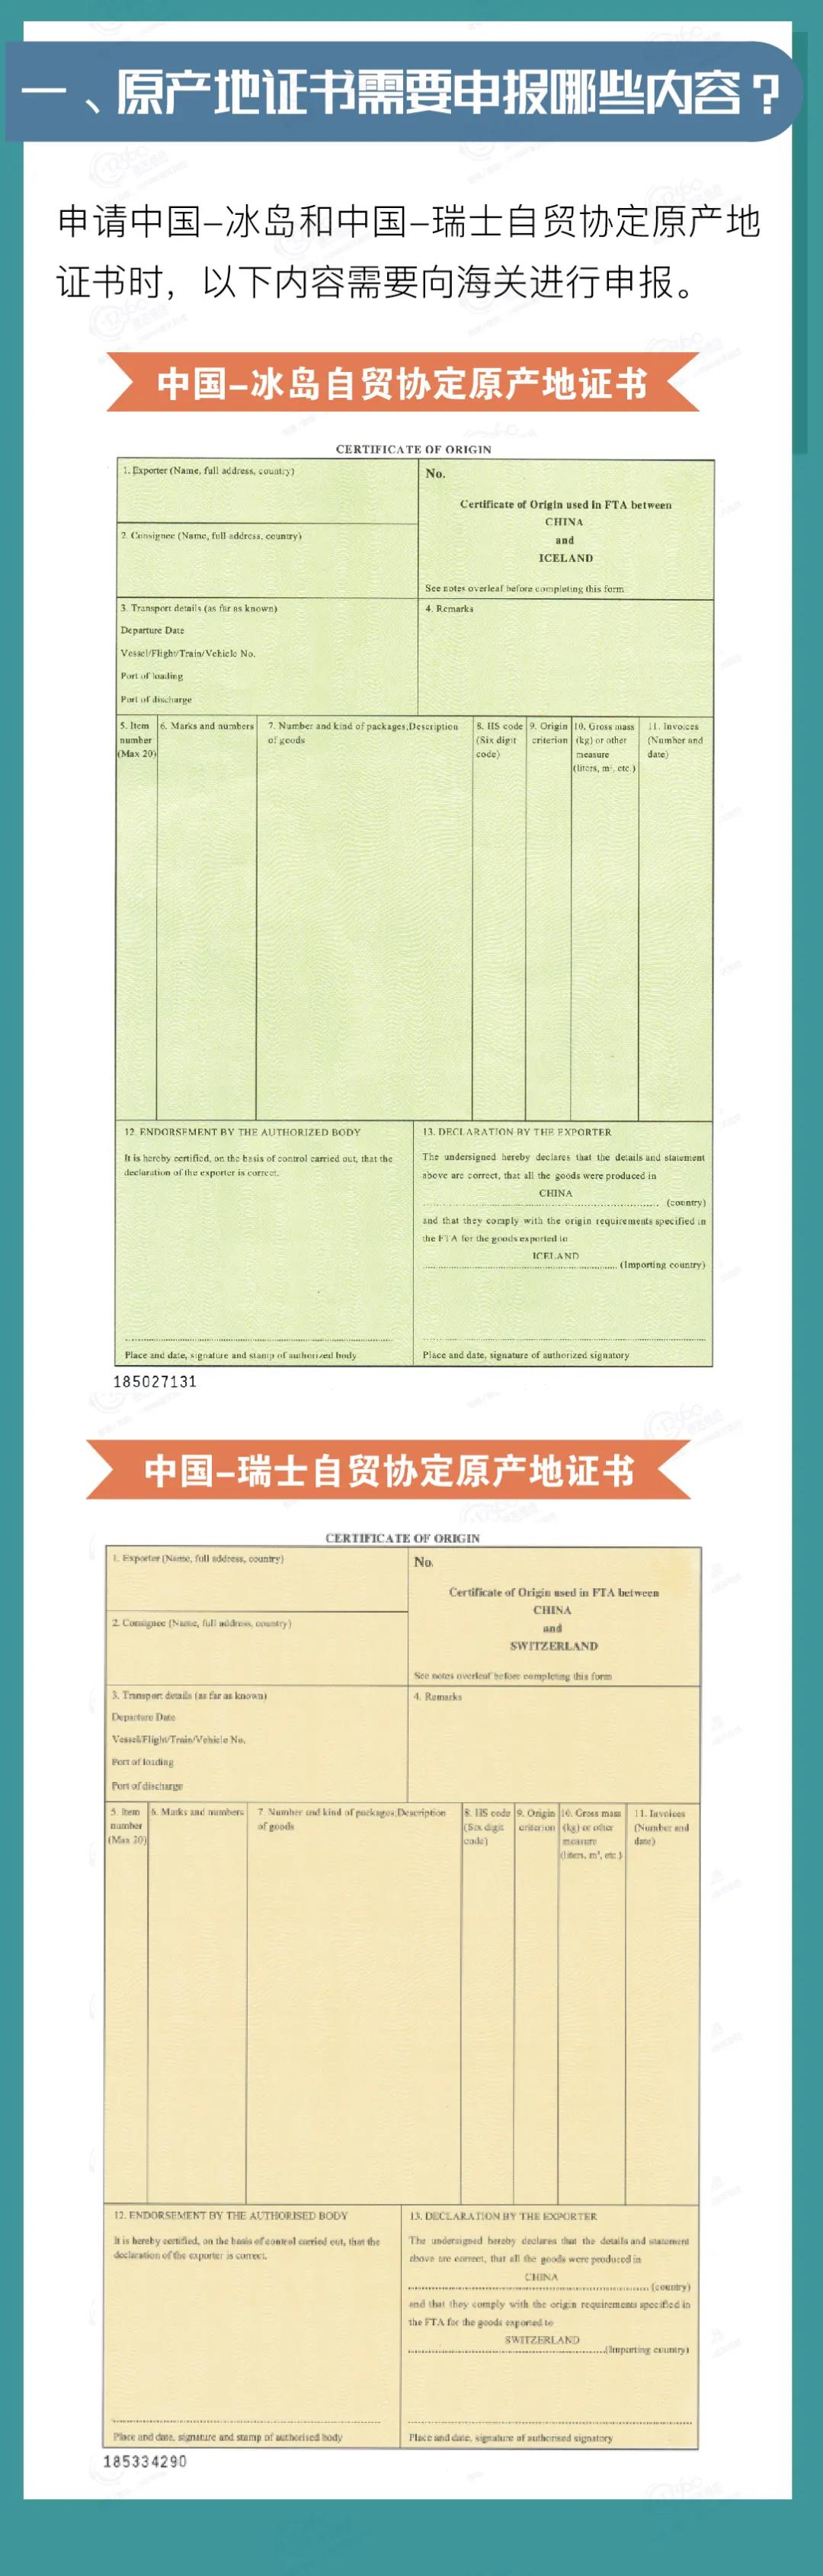 中国-冰岛、中国-瑞士自贸协定原产地证书申报指南